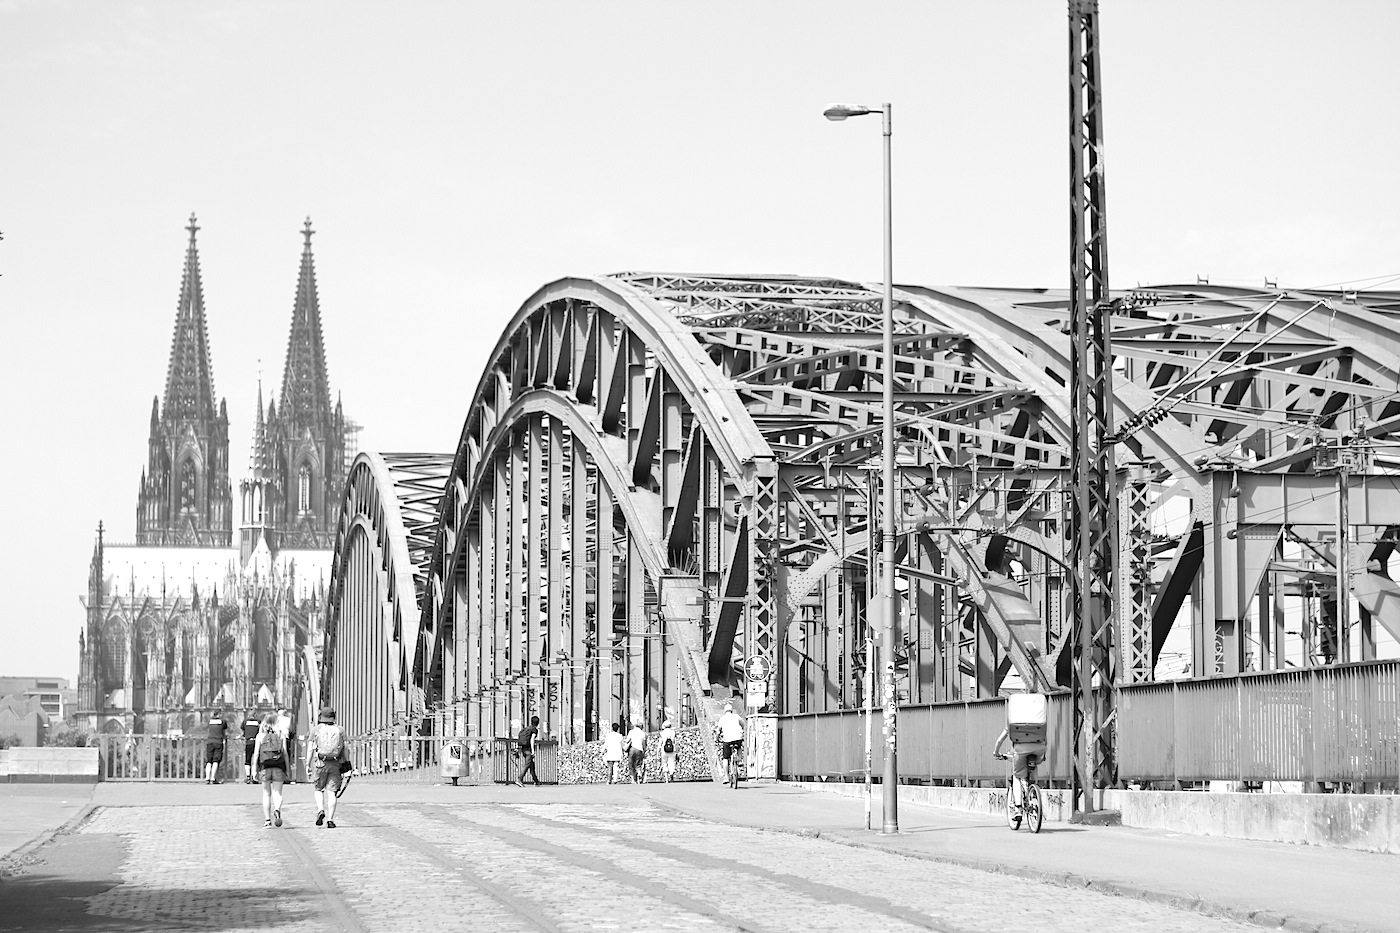 mit der 1911 errichteten Hohenzollernbrücke. Franz Schwechten entwarf die Portale und Türme; Friedrich Dircksen, Fritz Beermann (EBD Köln) waren für die Stahlbögen und Konstruktion verantwortlich. Die Bogenbrücke ist knapp 410 Meter lang und knapp 30 Meter breit.